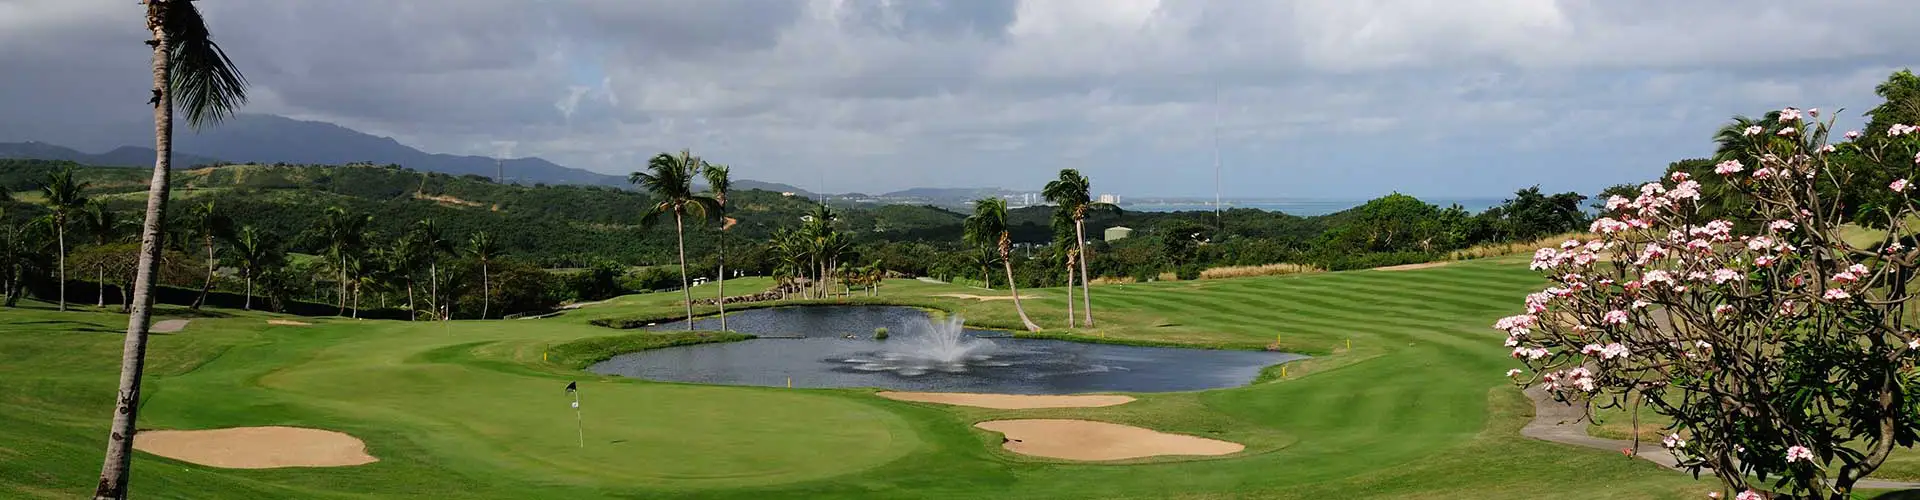 View of the 18 hole golf course found in El Conquistador hotel, Fajardo, Puerto Rico